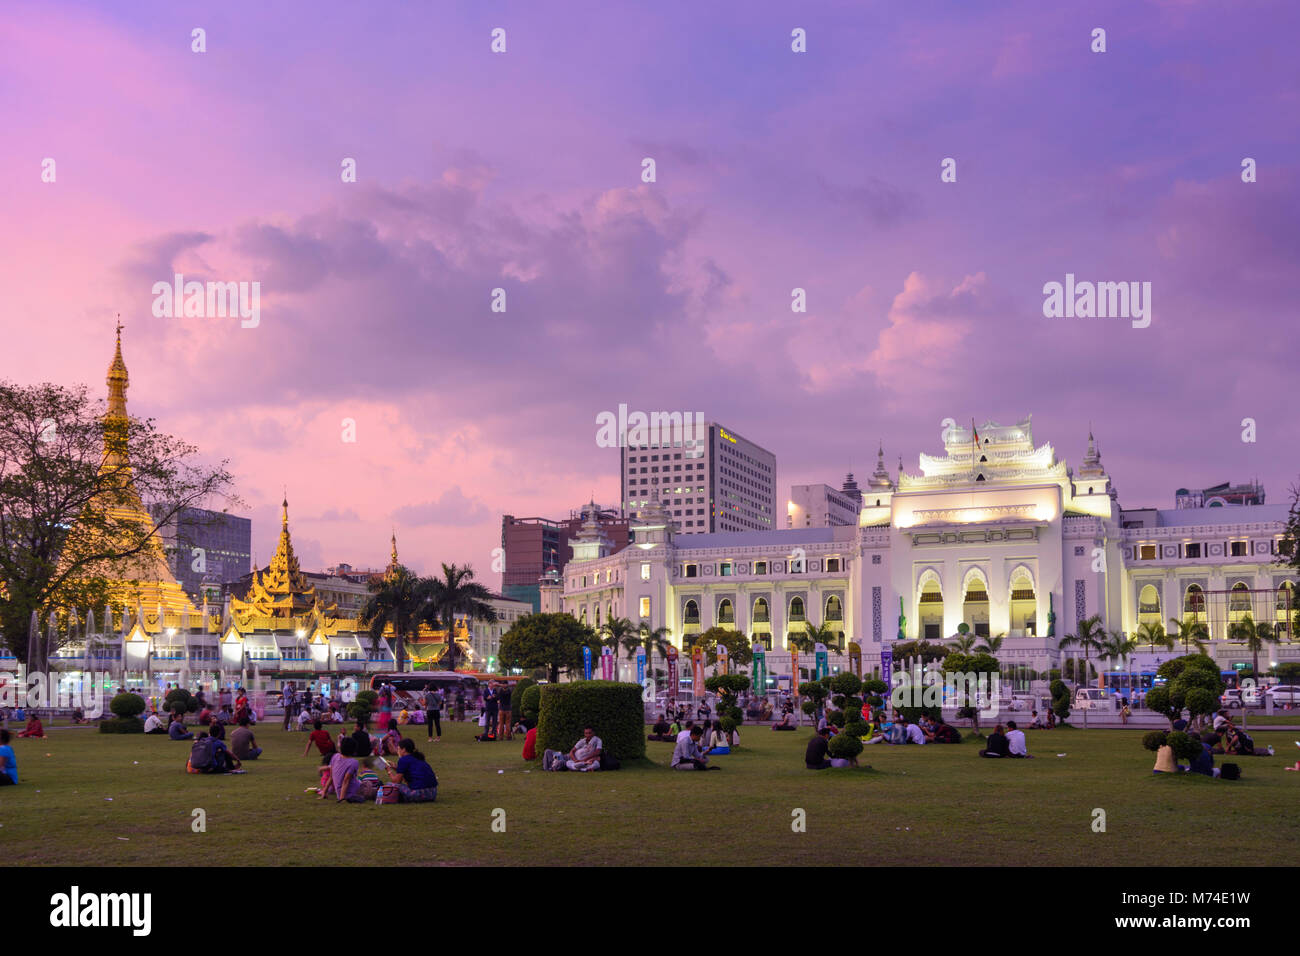 Yangon (Rangoon): Mahabandula (Mahabandoola) giardino (Fytche Square) memorial park, Sule Pagoda, il Municipio, la gente seduta a prato, quartiere coloniale, Foto Stock